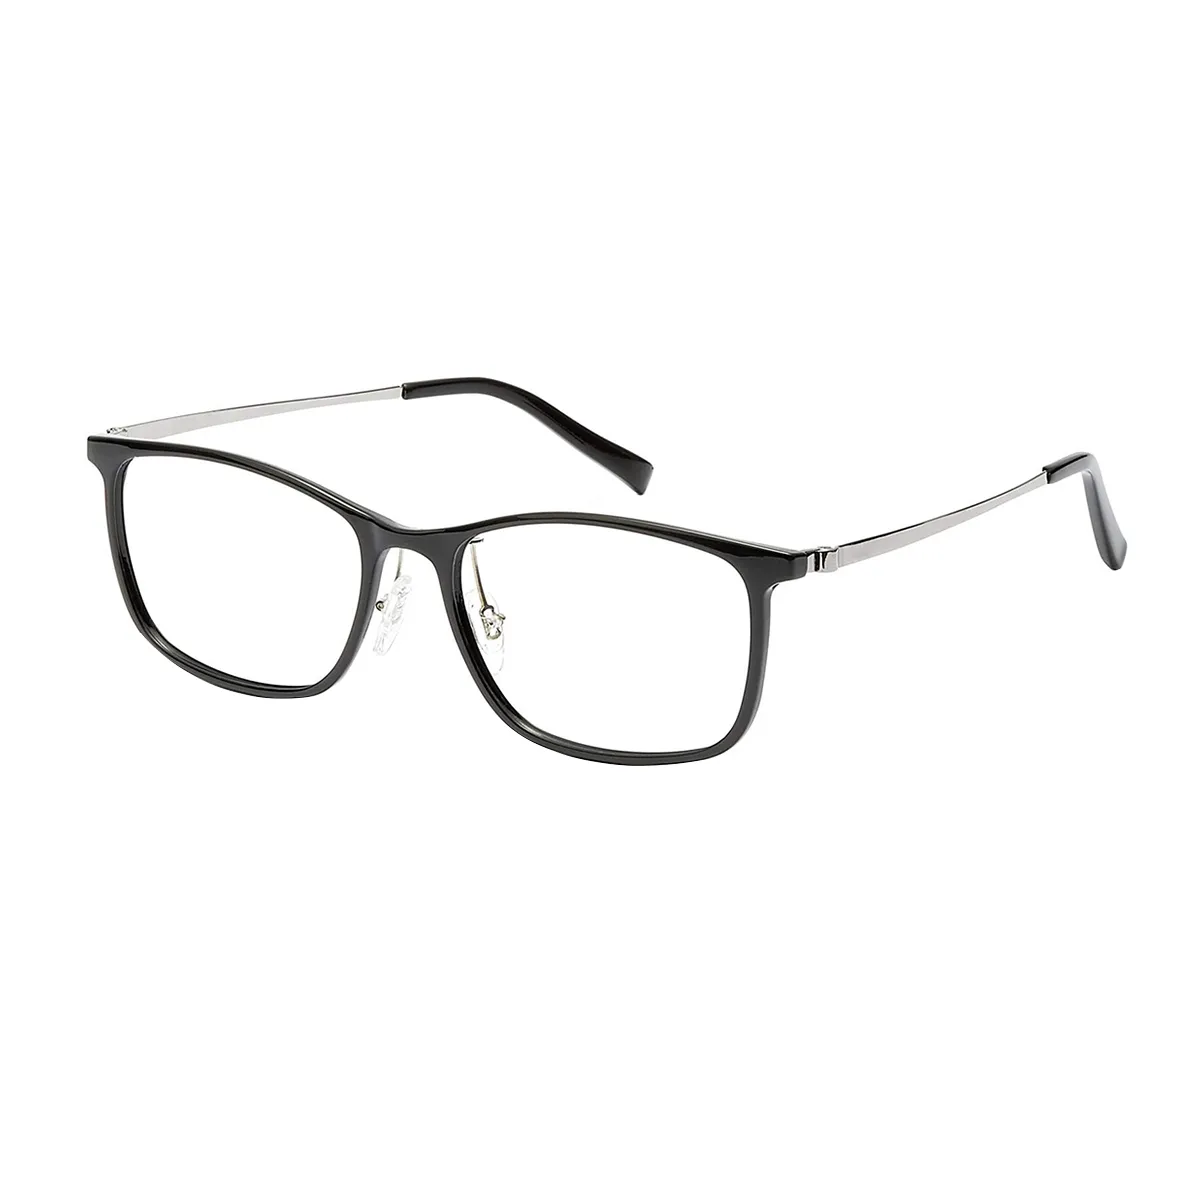 Foley - Rectangle Black Glasses for Men & Women